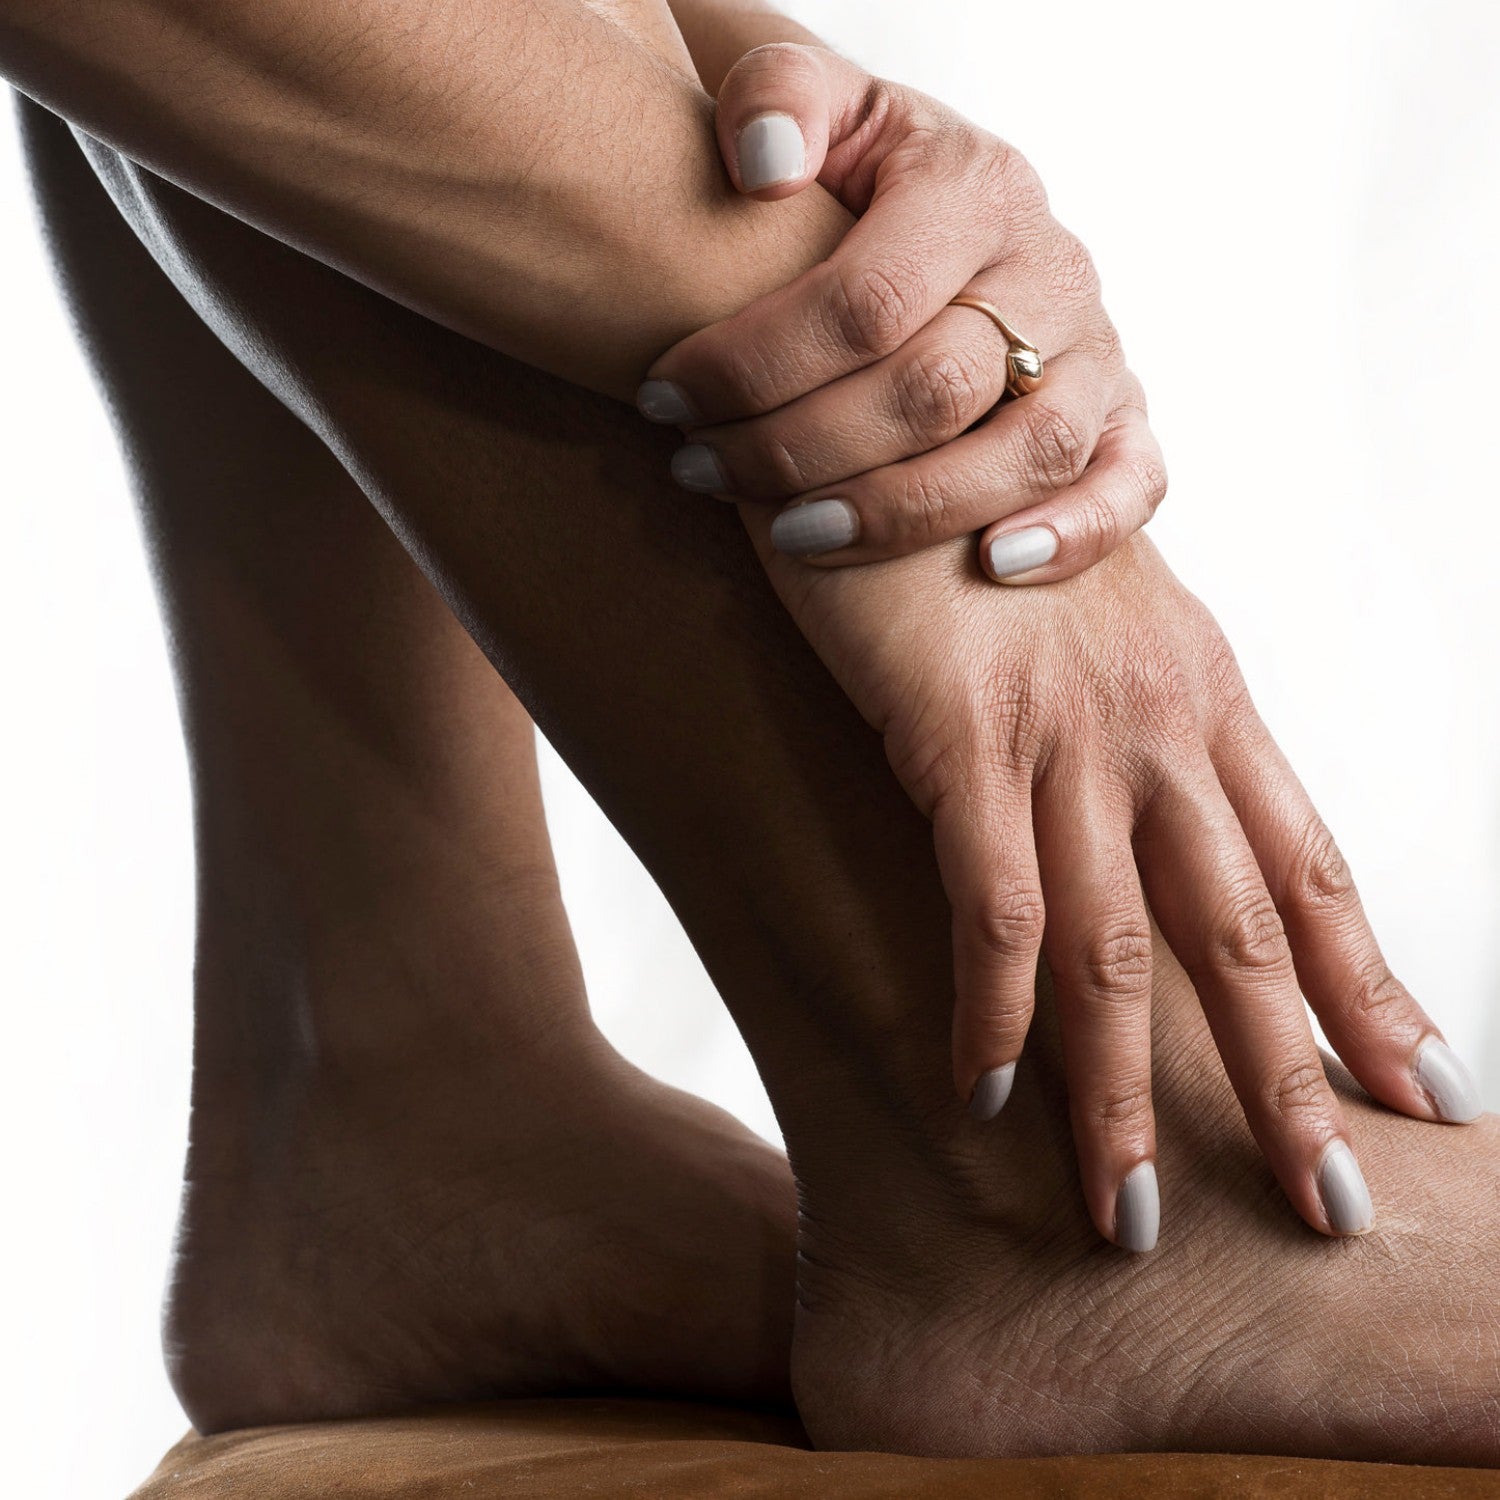 Massage Guns For Arthritis Pain